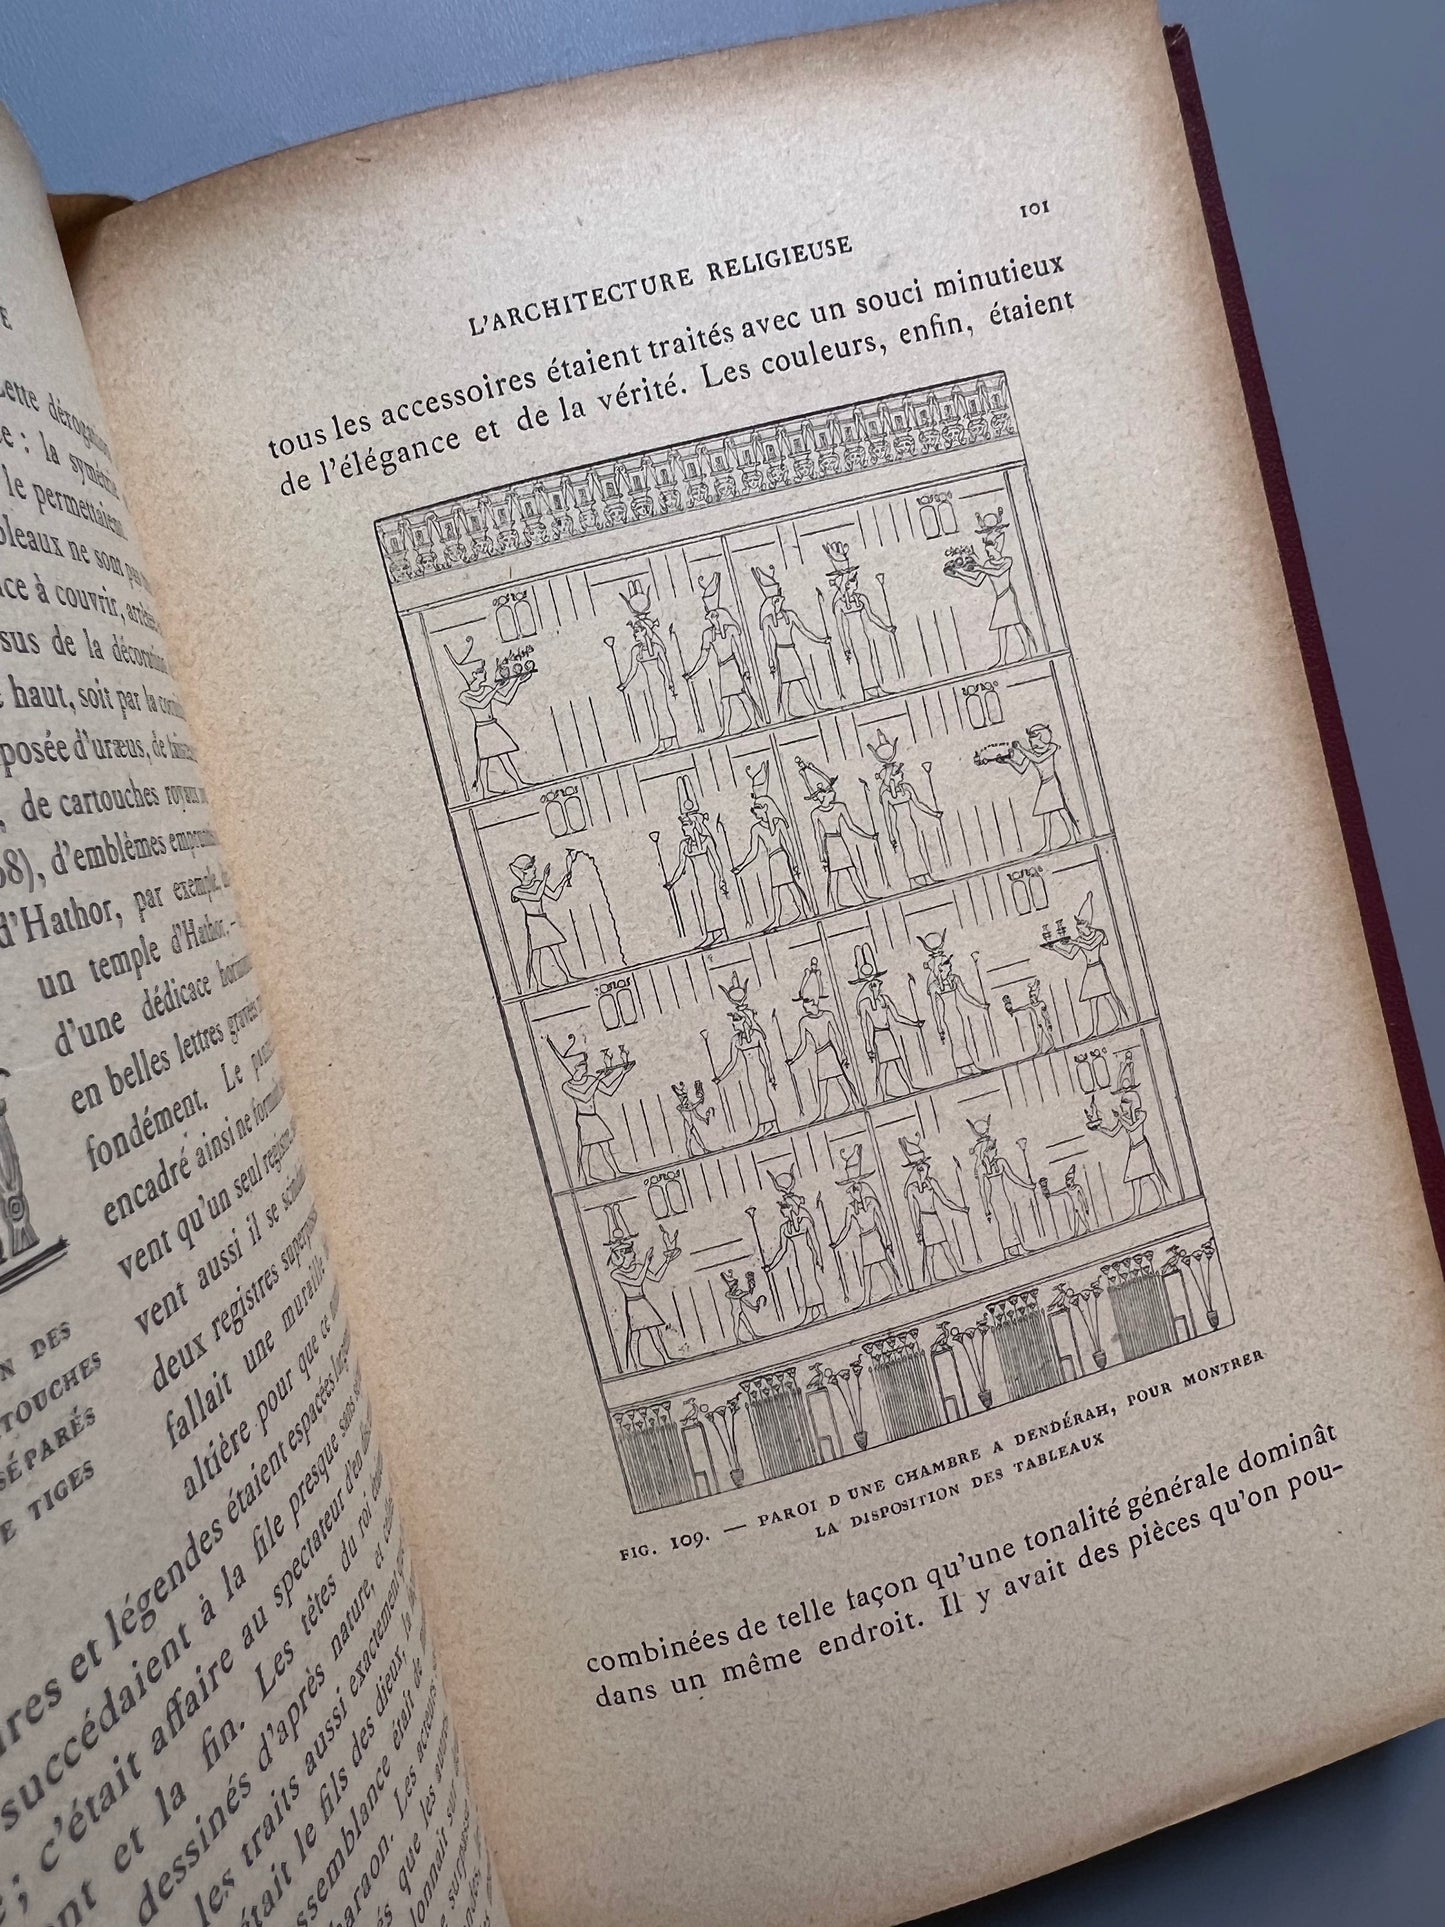 L'Archéologie egyptienne, G. Maspero - Libraire d'Éducation nationale, 1907